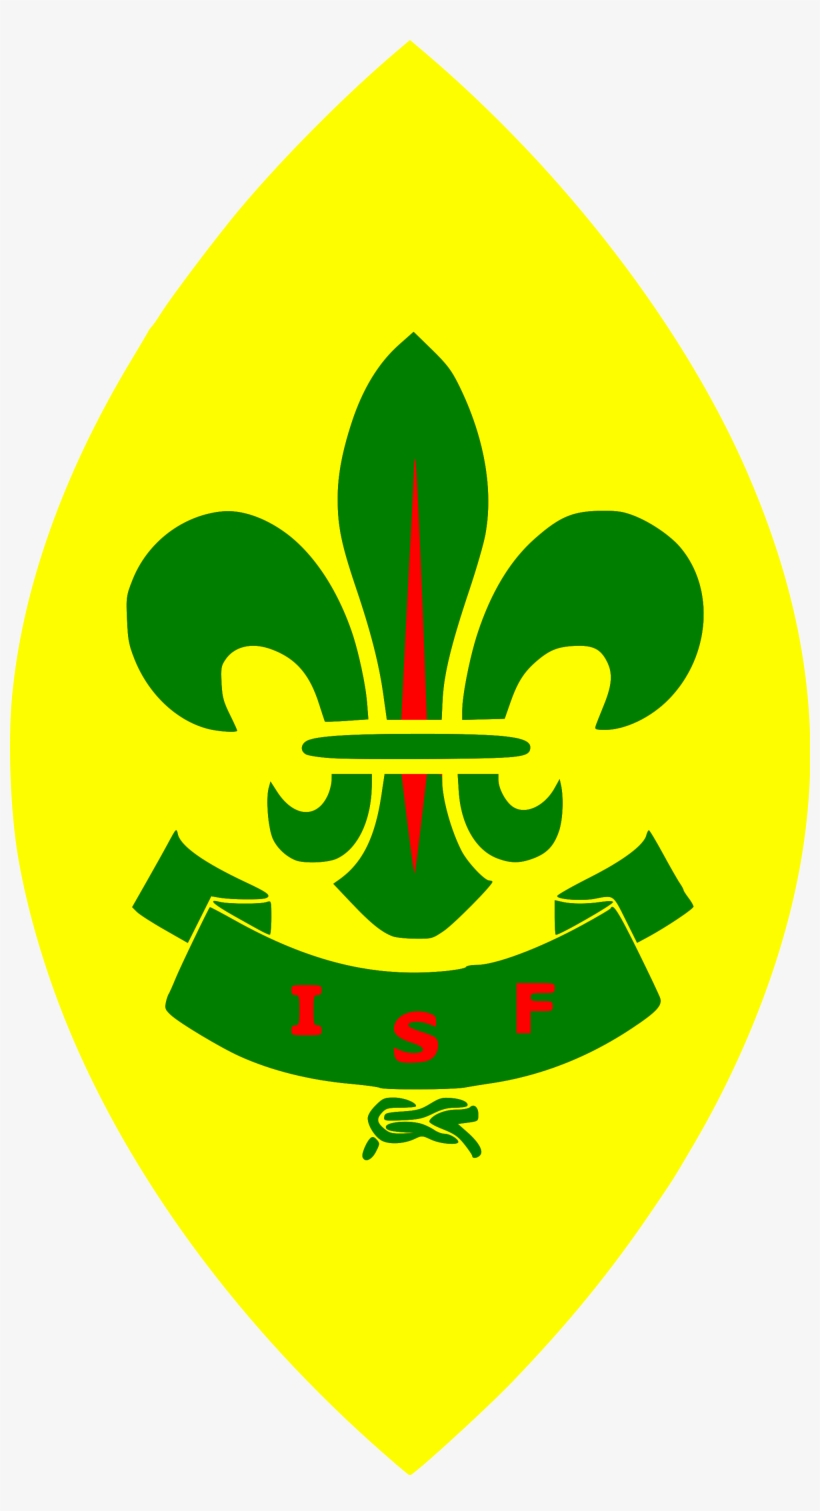 International Scout Fellowship Scout Uniform, International - Emblem, transparent png #8678070